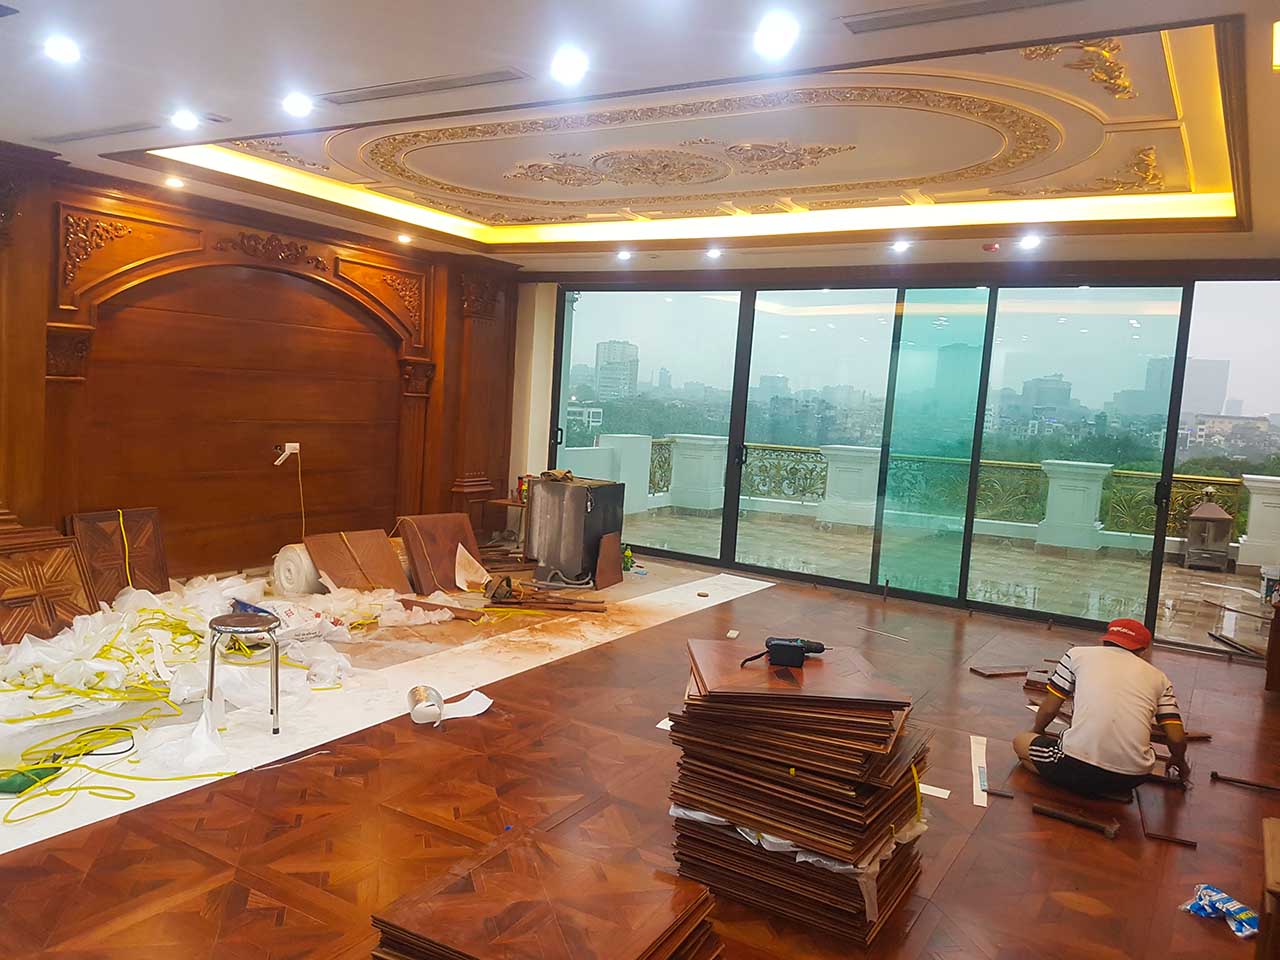 Thi công lắp đặt sàn gỗ nghệ thuật gỗ Hương tại Thanh Nhàn, Hà Nội